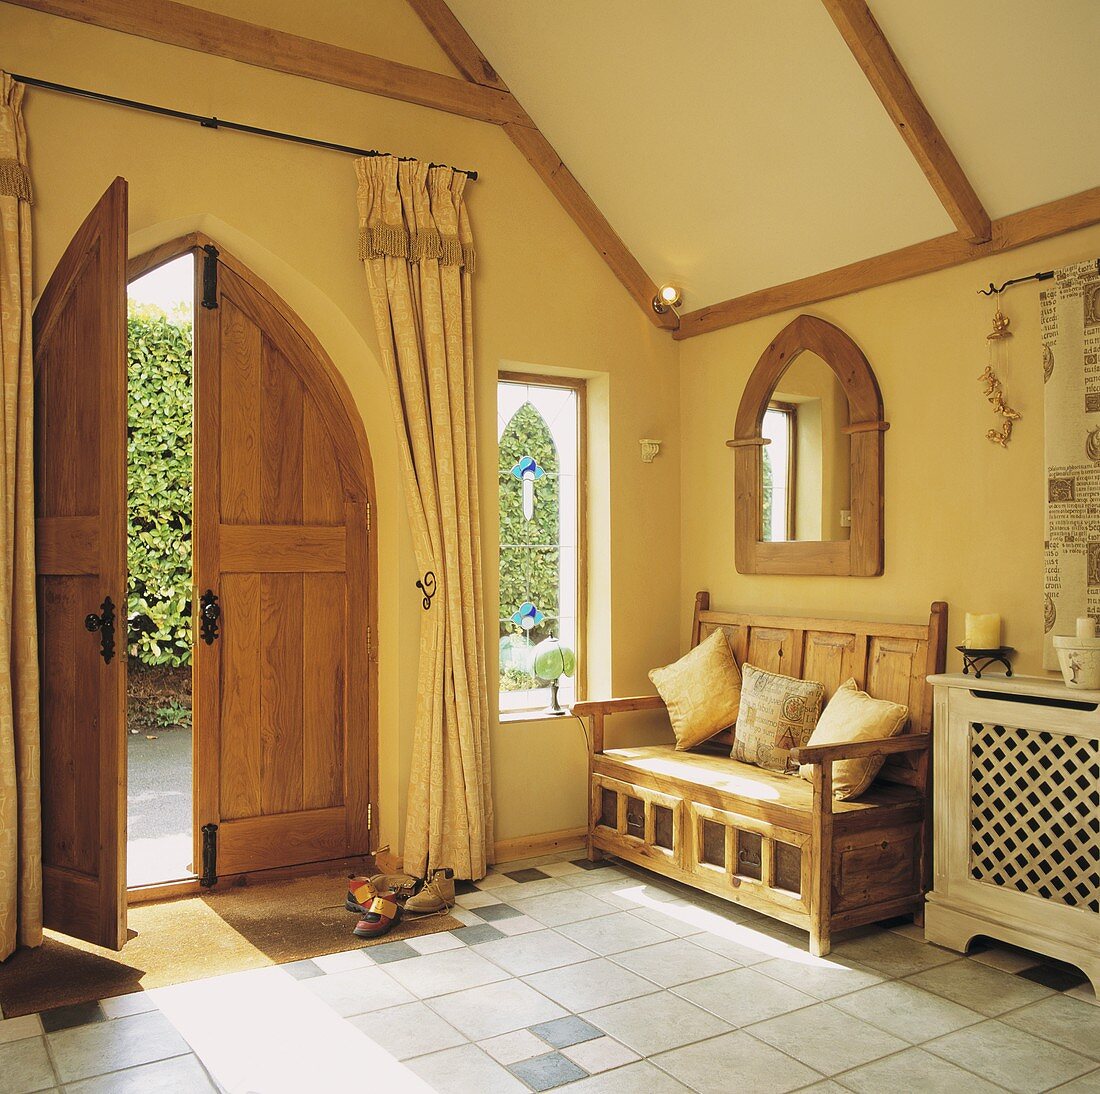 Eingangsraum eines Landhauses mit gothischer Flügel-Holztür und einem gothischen Spiegel mit Holzrahmen an der Wand